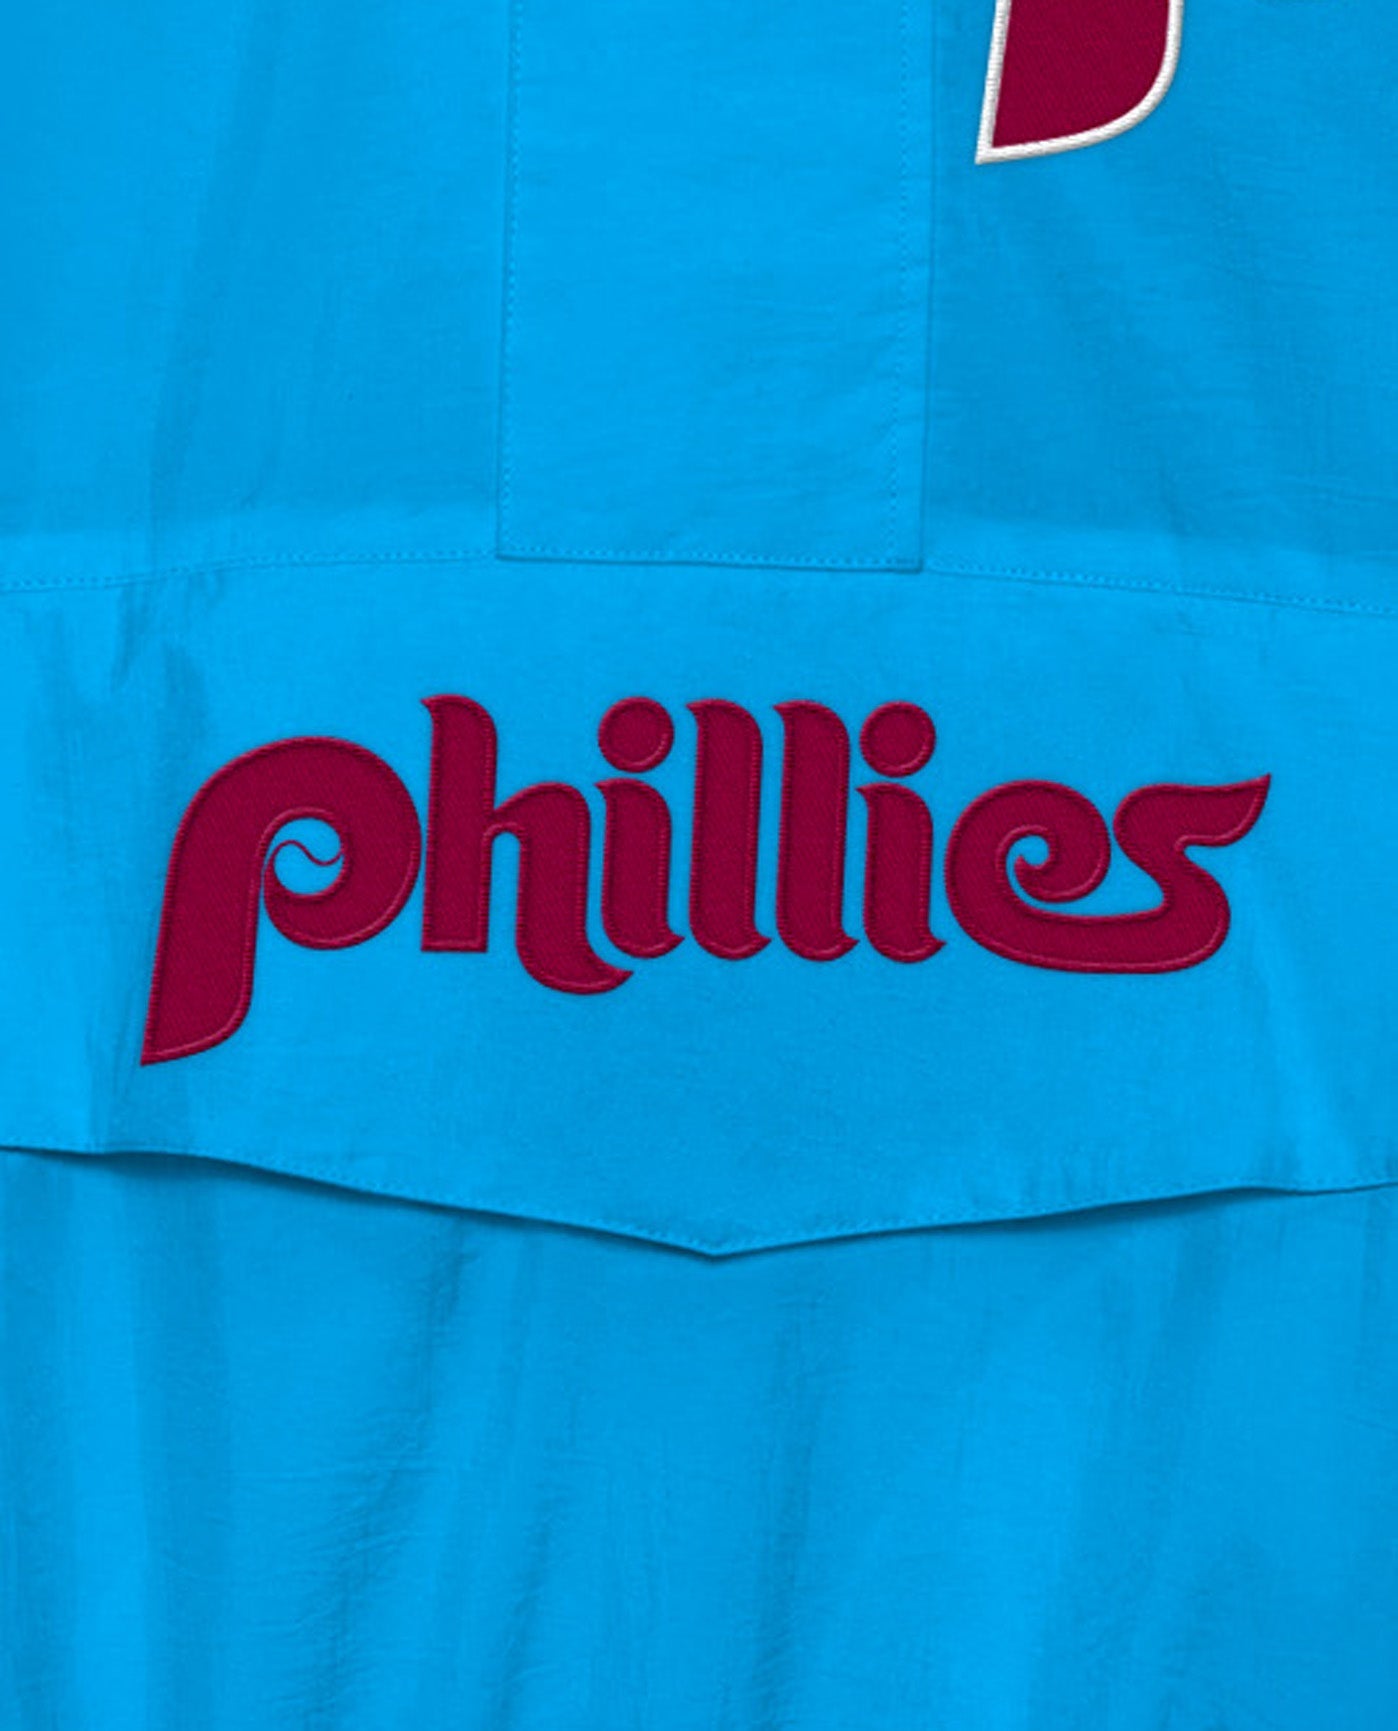 phillies zipper jersey